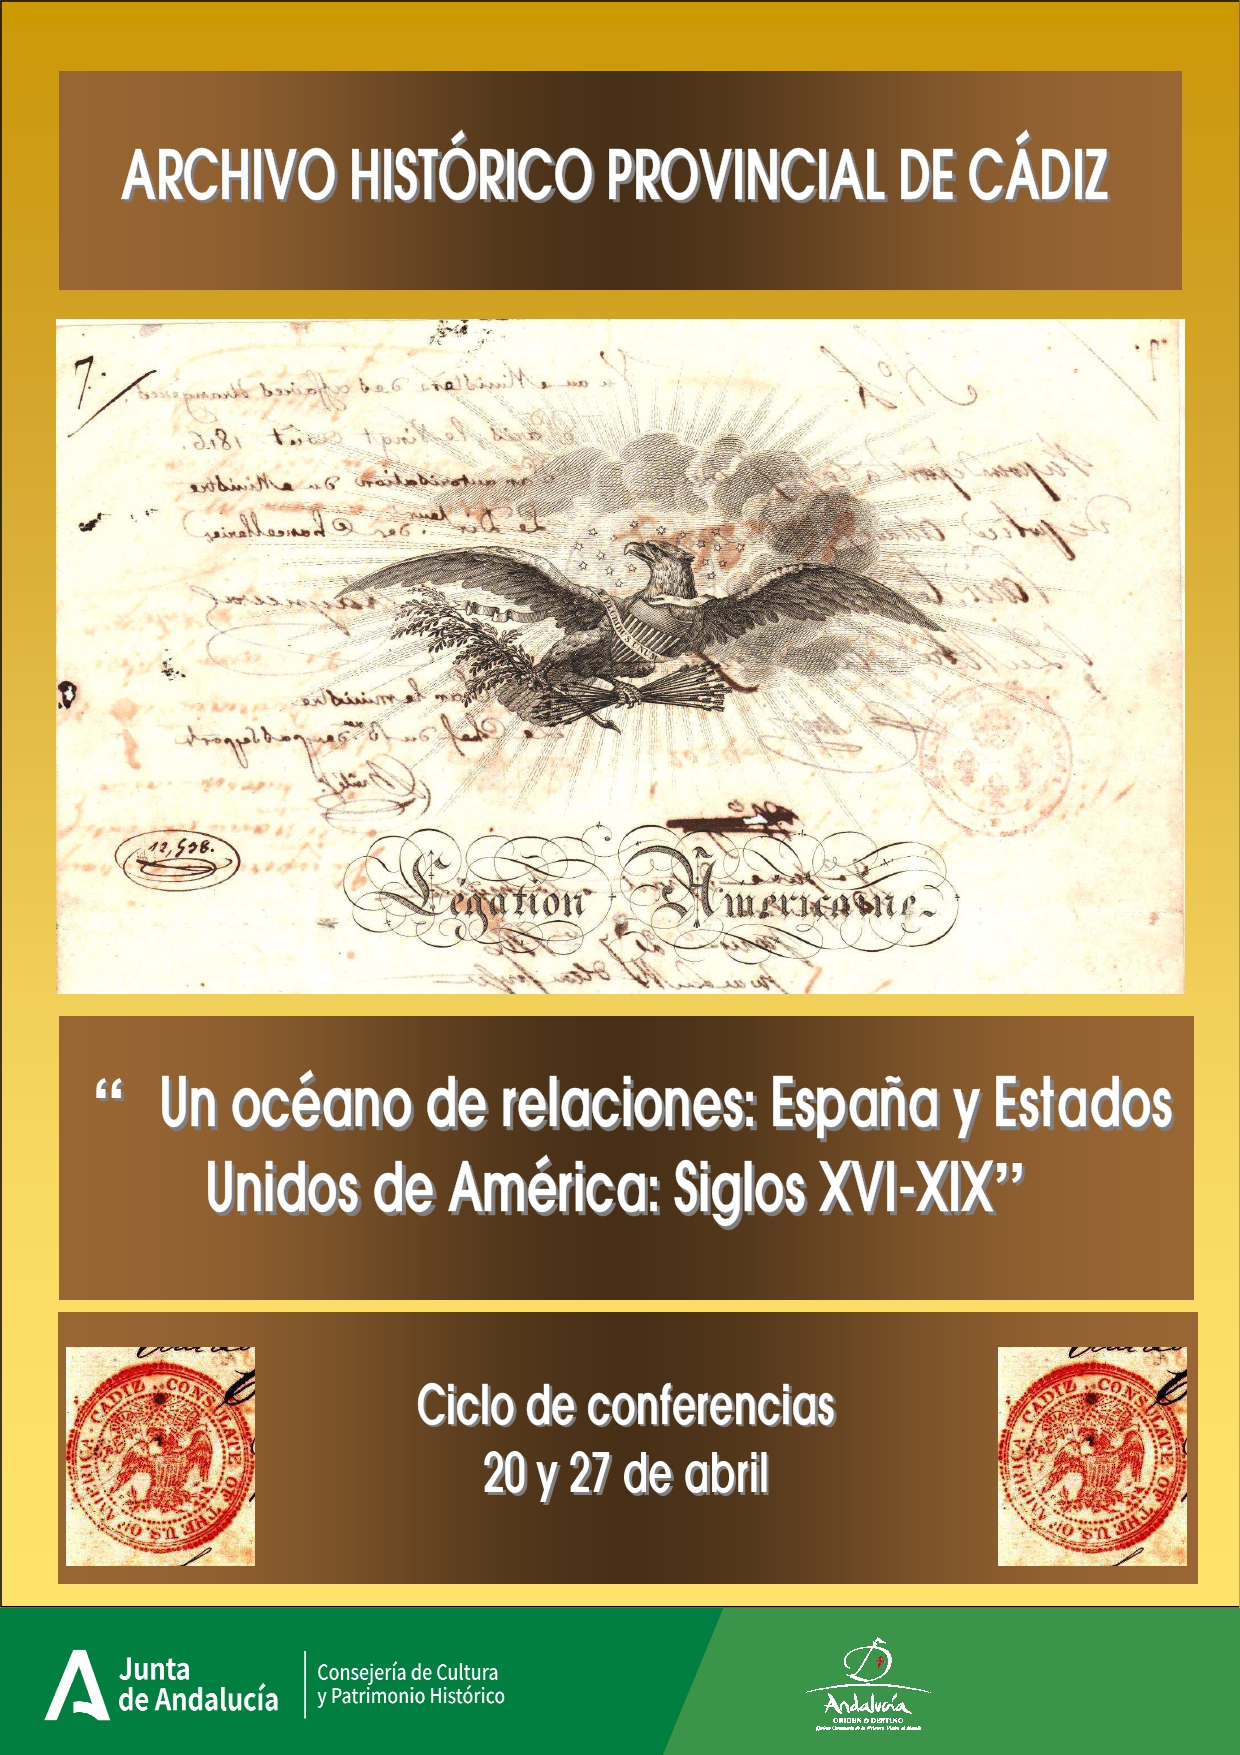 Ciclo de conferencias: “Un océano de relaciones: España y Estados Unidos de América: siglos XVI-XIX”,